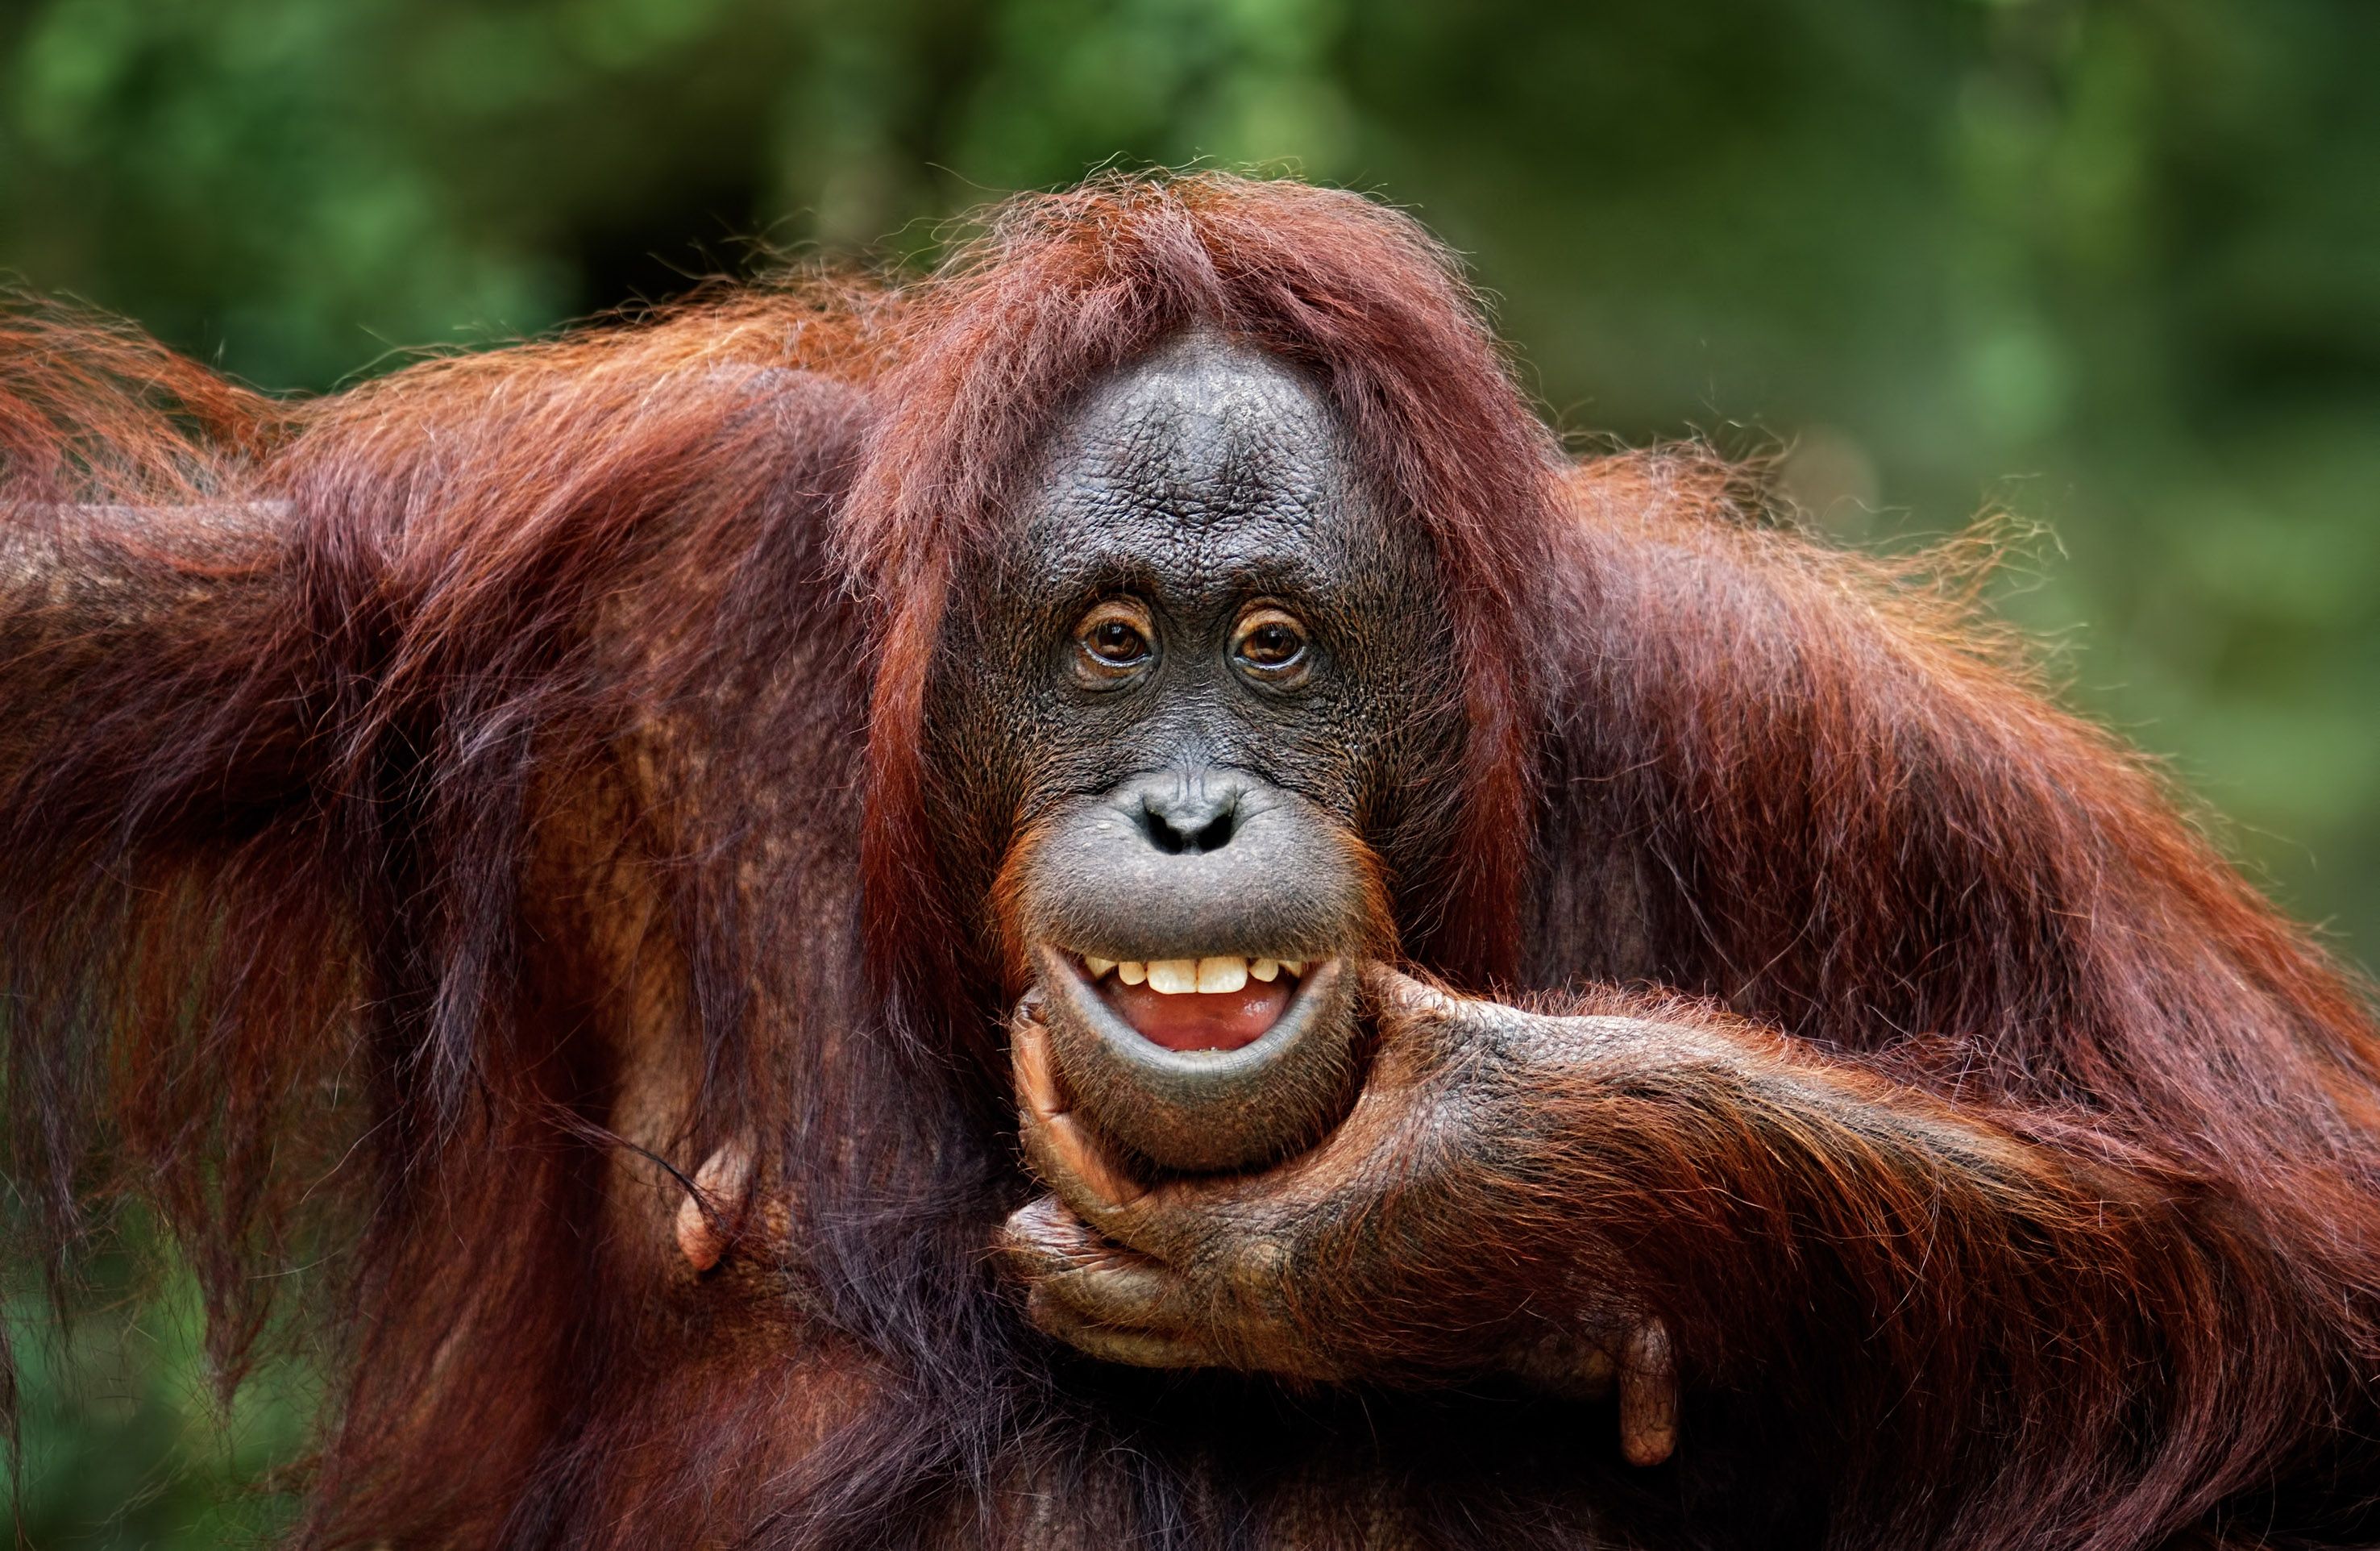 Les capacités de contrôle et de coordination vocale des grands singes ont longtemps été sous-estimées. © Freder, Getty Images